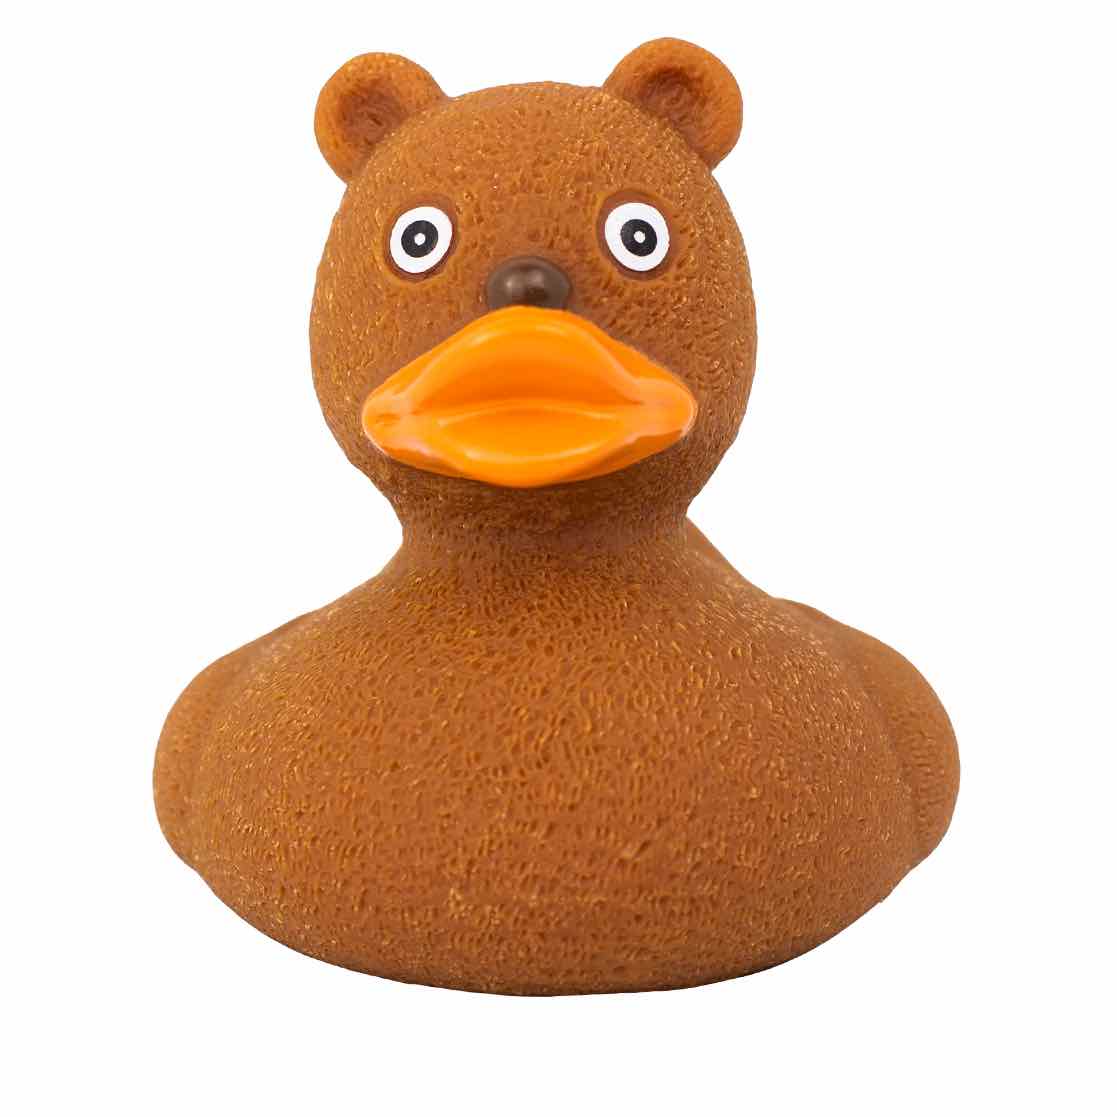 Vaderlijk pack Civic Teddy Rubber Duck | Buy premium rubber ducks online - world wide delivery!